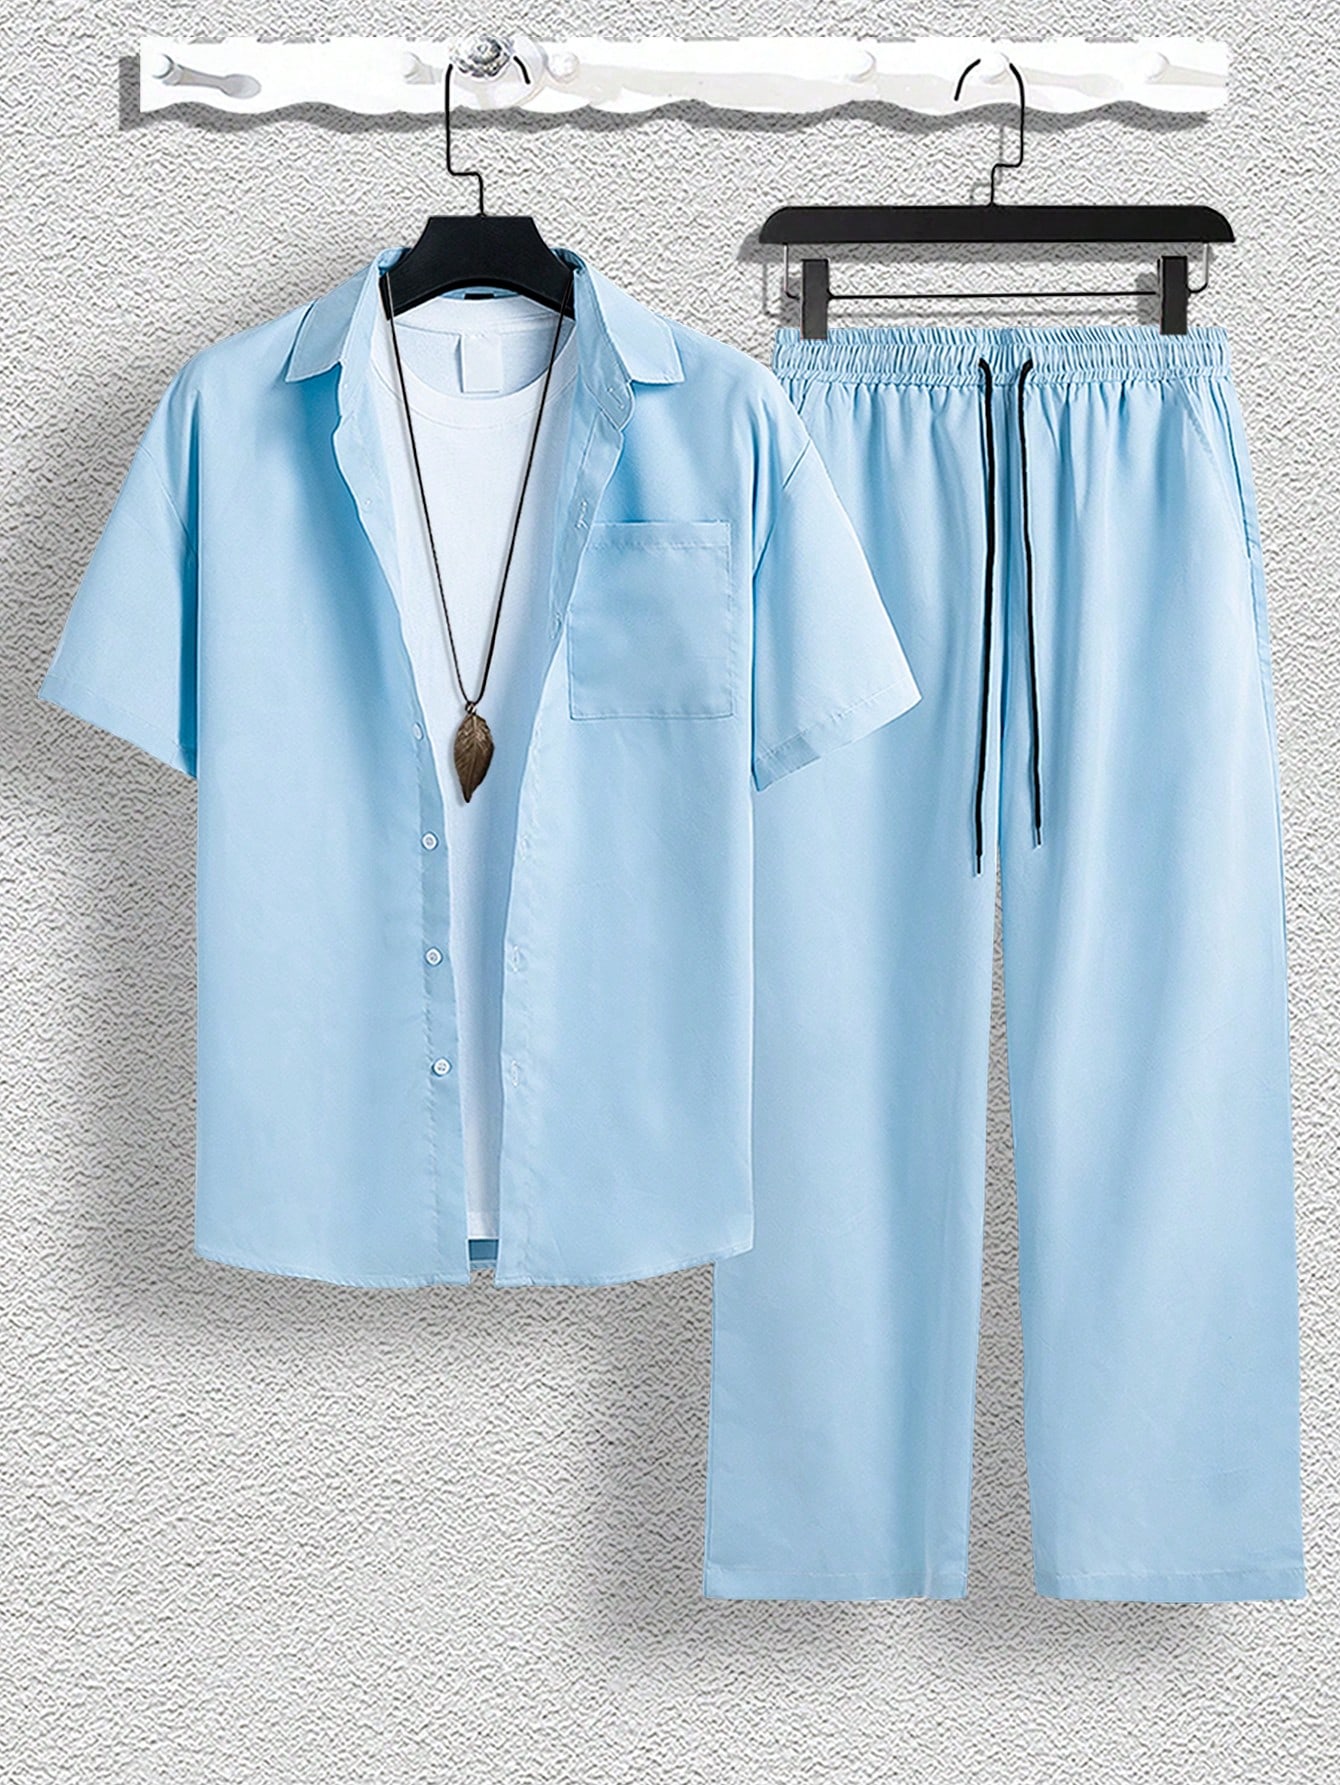 Мужской однотонный комплект из рубашки и брюк Manfinity Hypemode, голубые